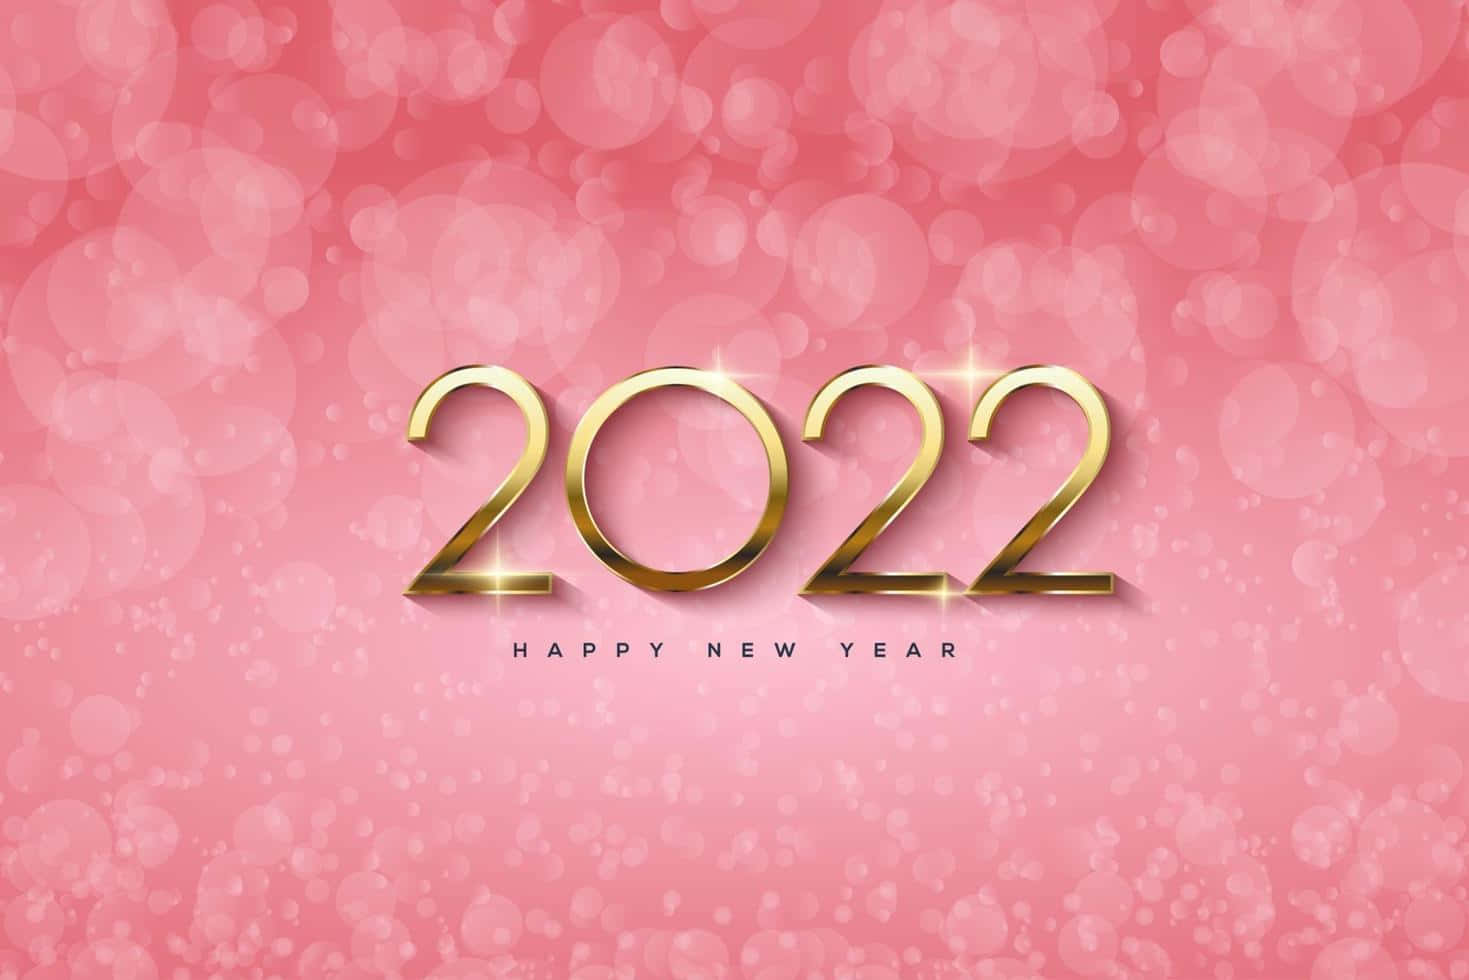 Nuevoaño, Nuevas Posibilidades - 2022